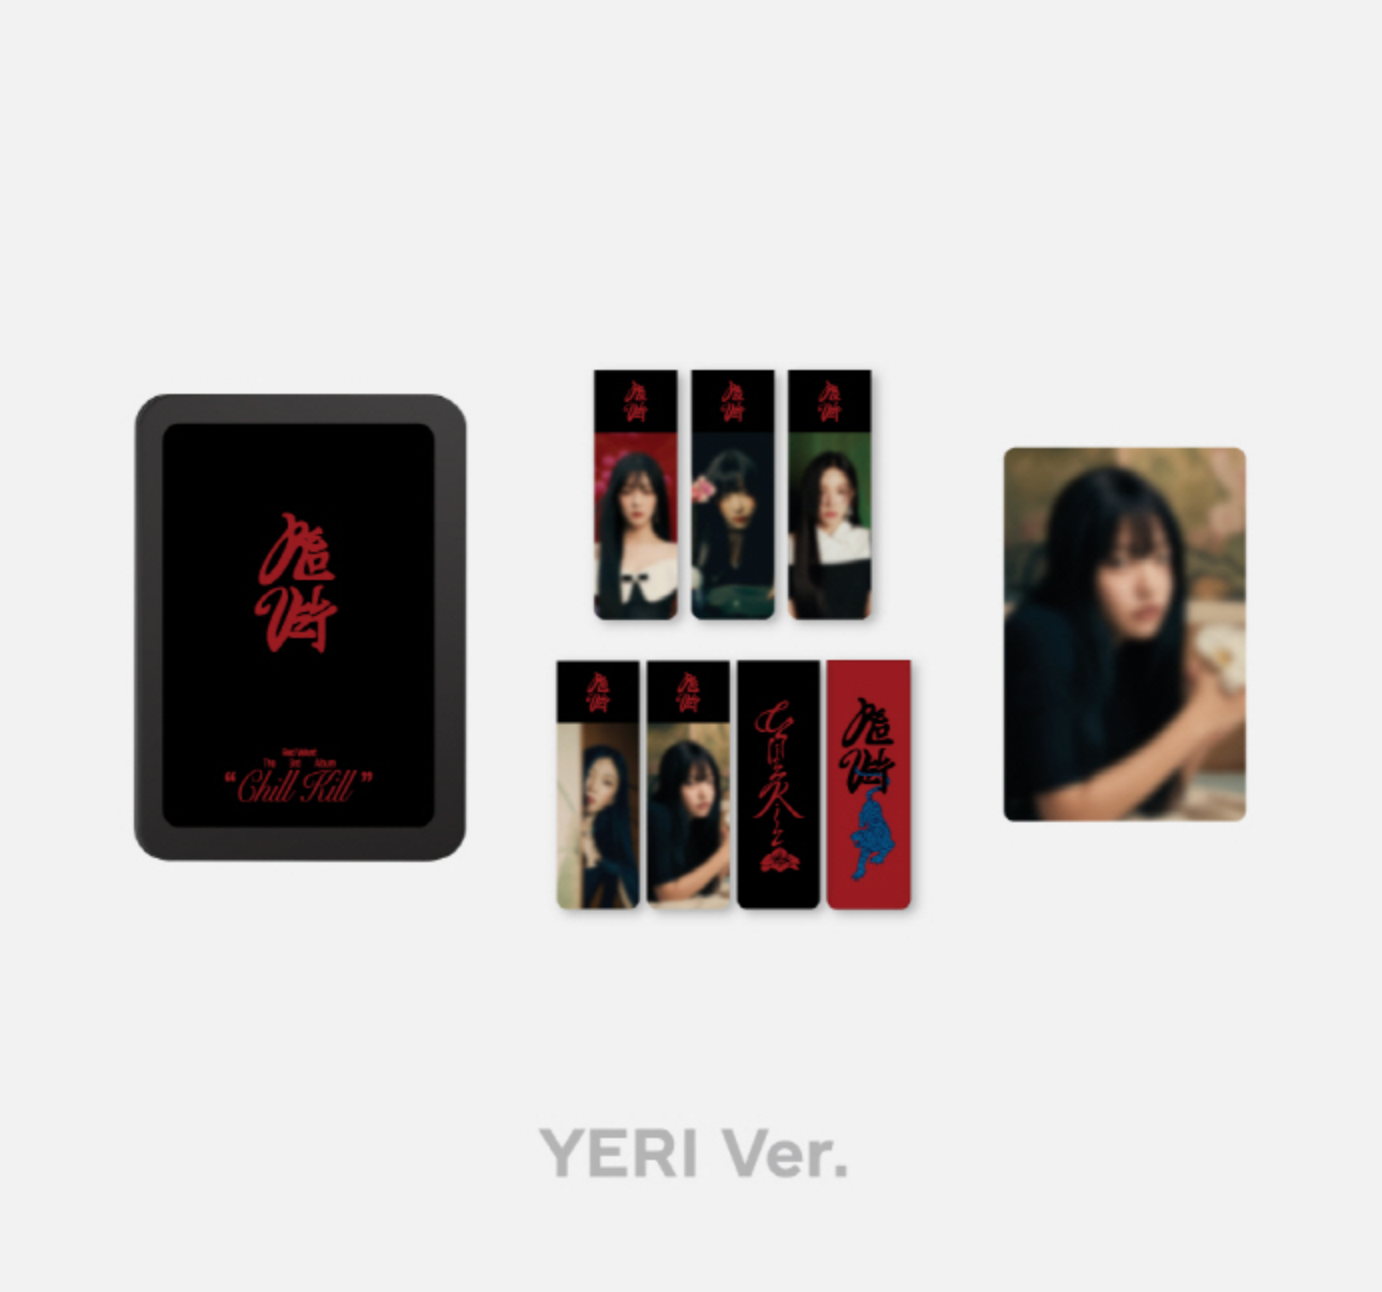 Red Velvet (Chill Kill) Magnetic Bookmark